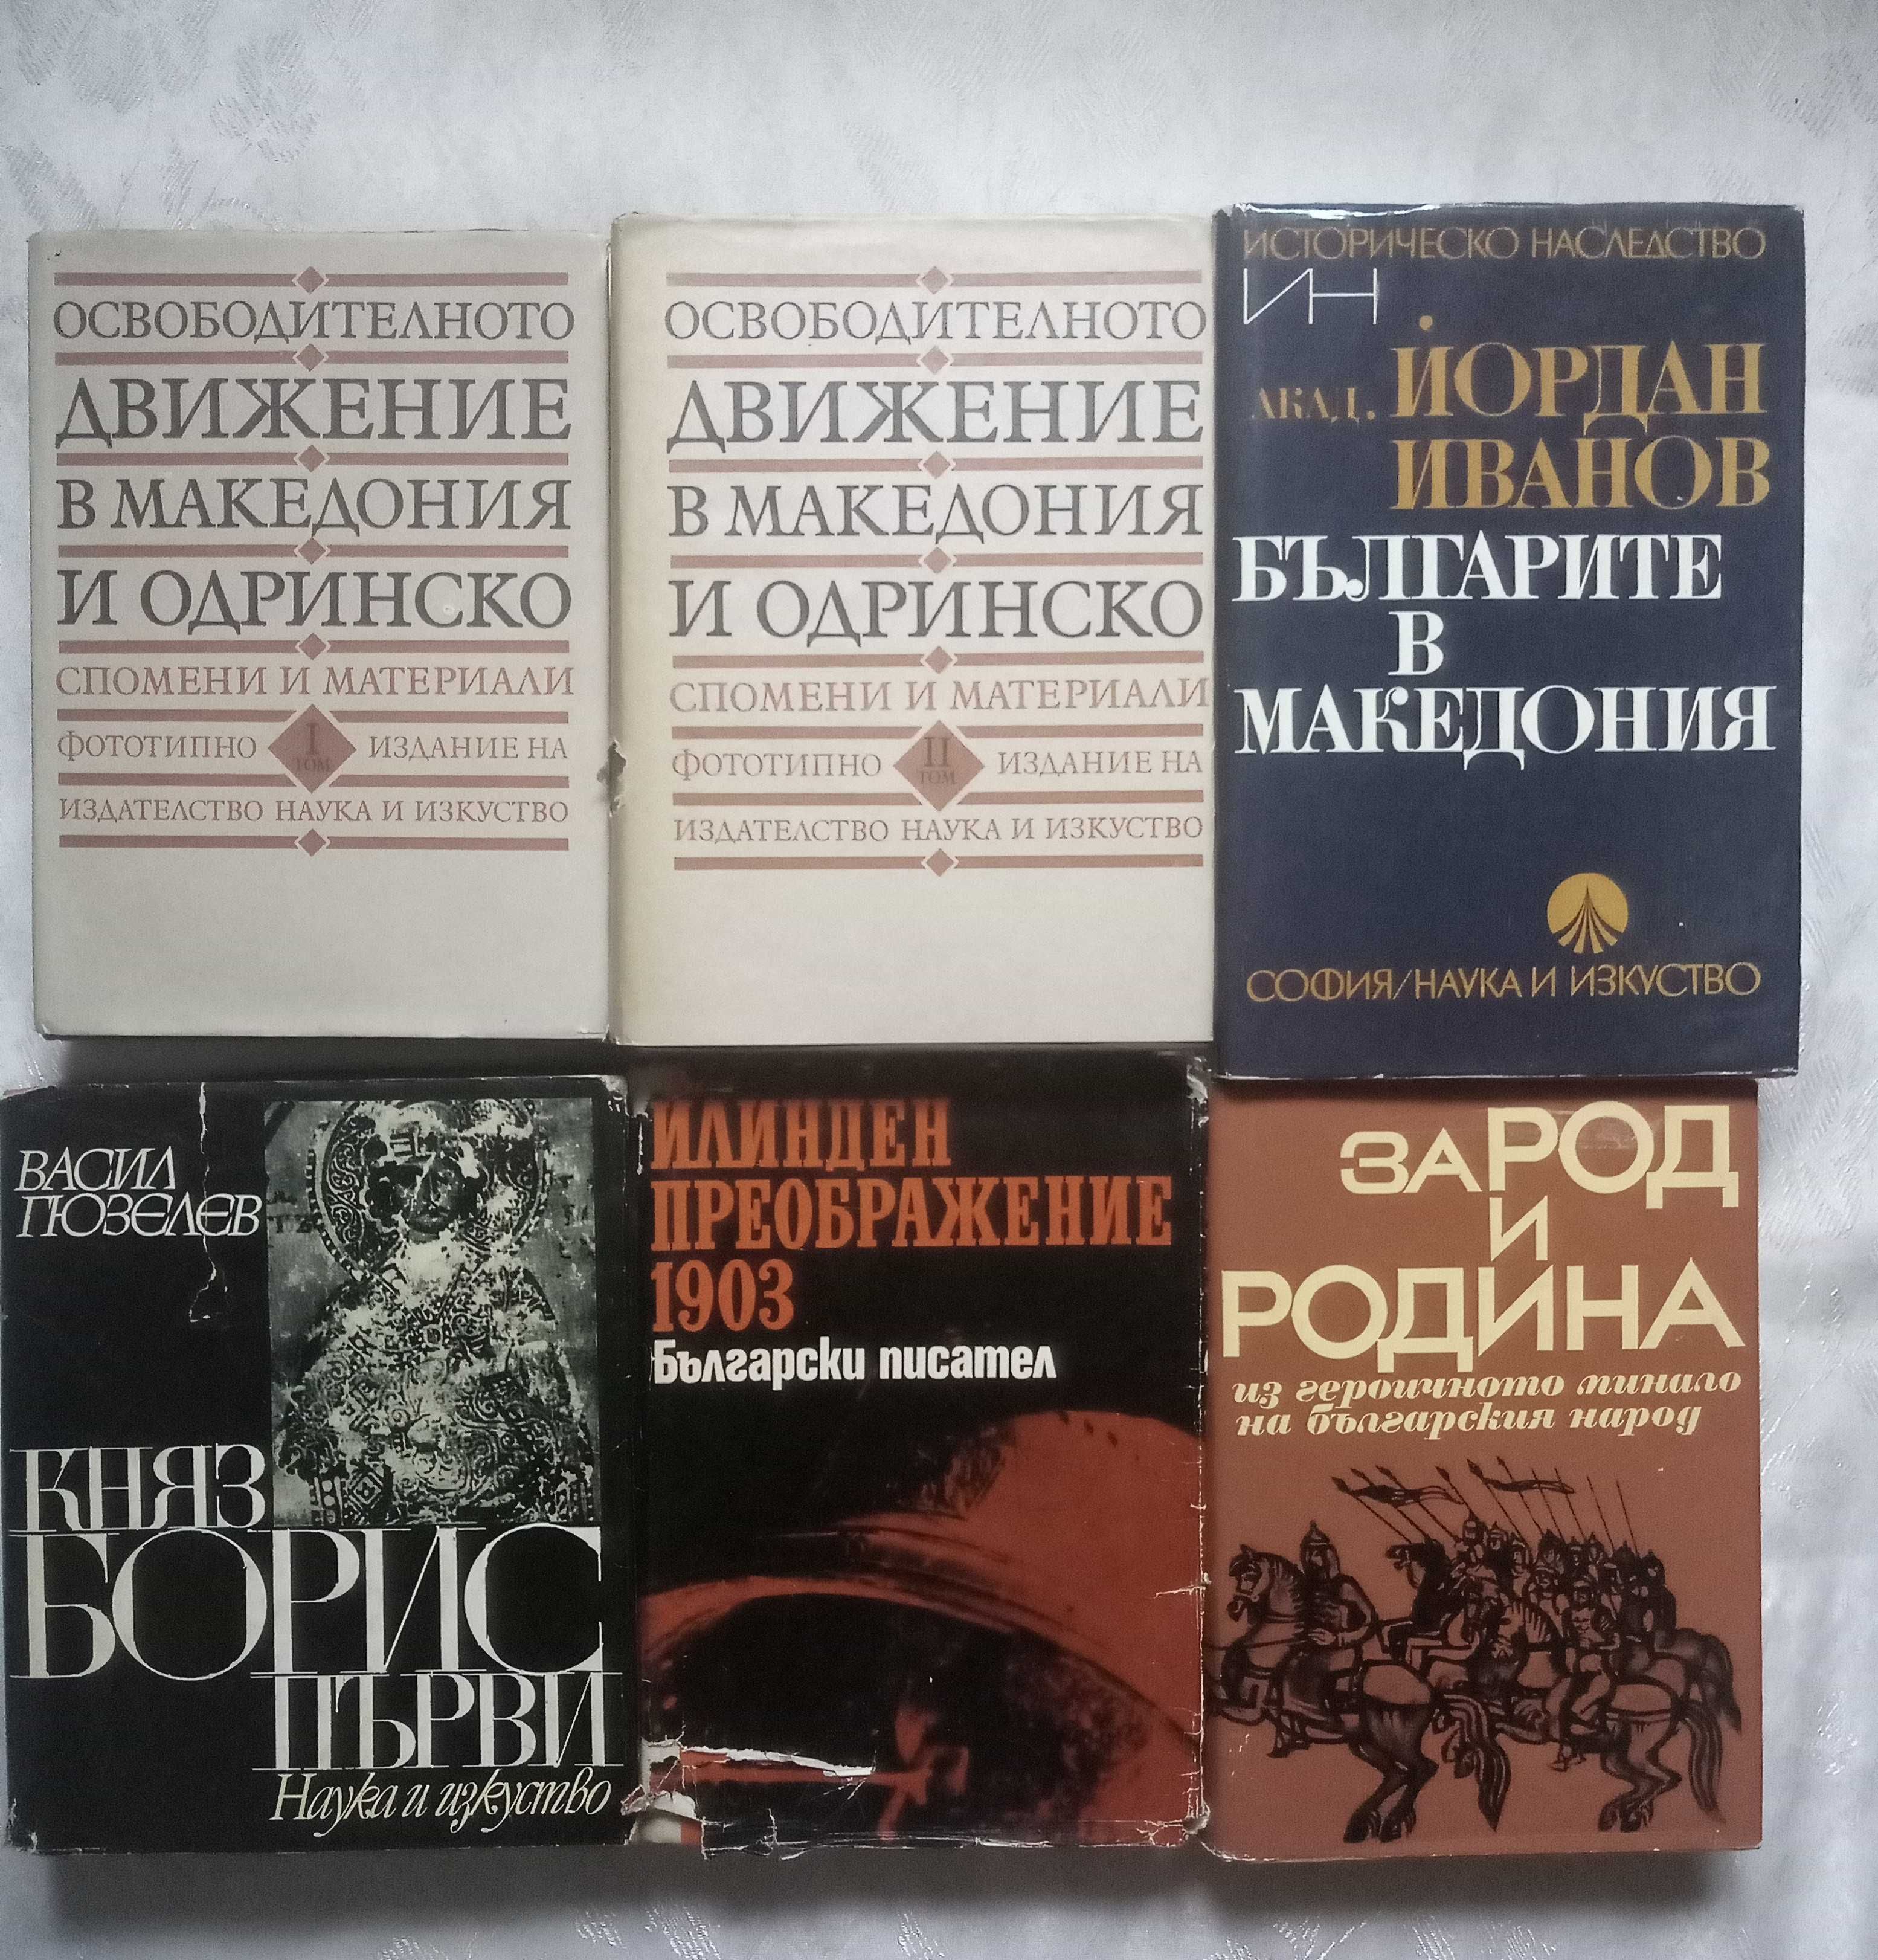 Книги от български автори поезия, проза, публицистика